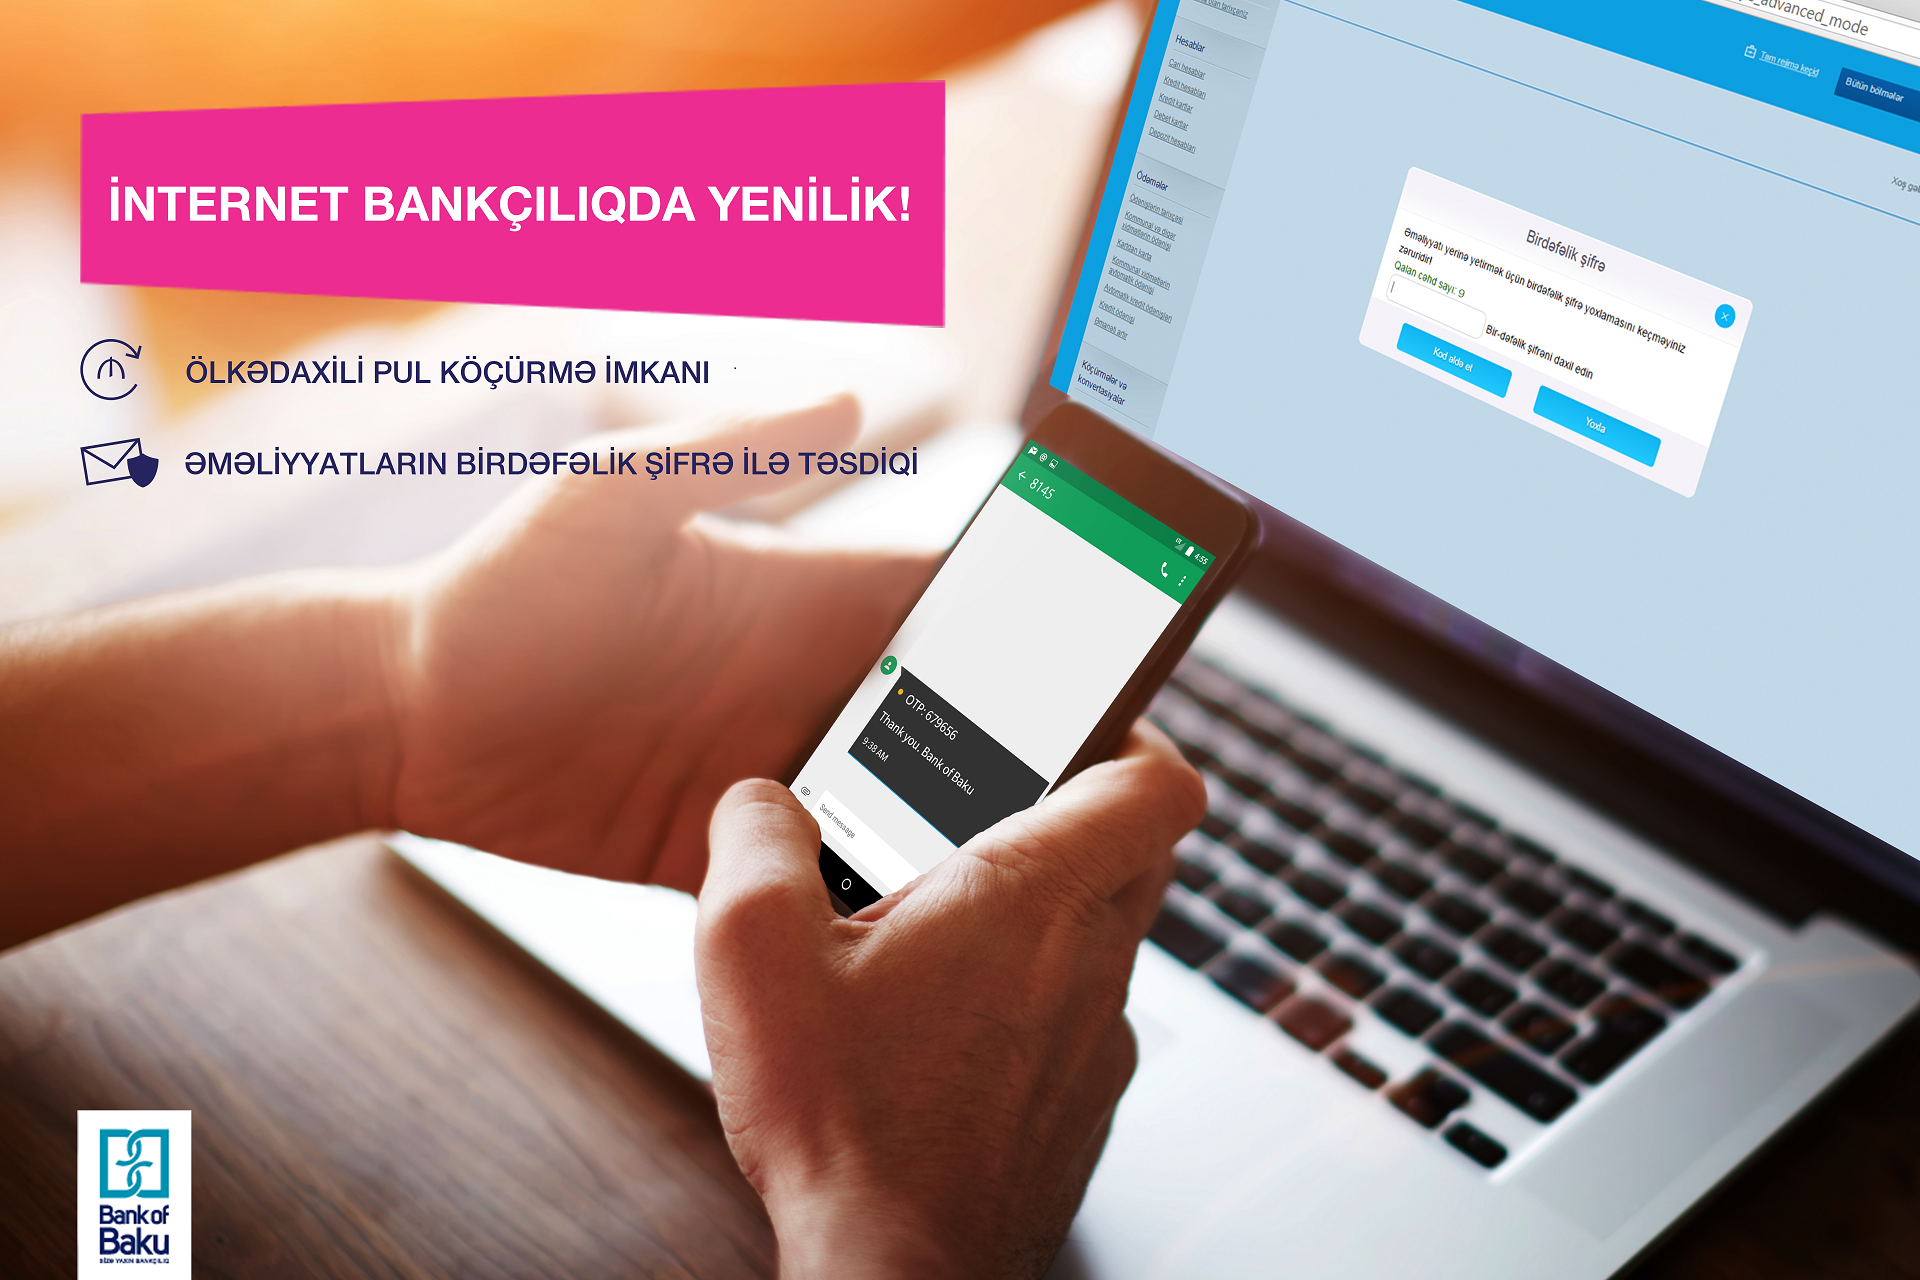 НОВШЕСТВО услуг Интернет Банкинга от Bank of Baku обрадует всех!